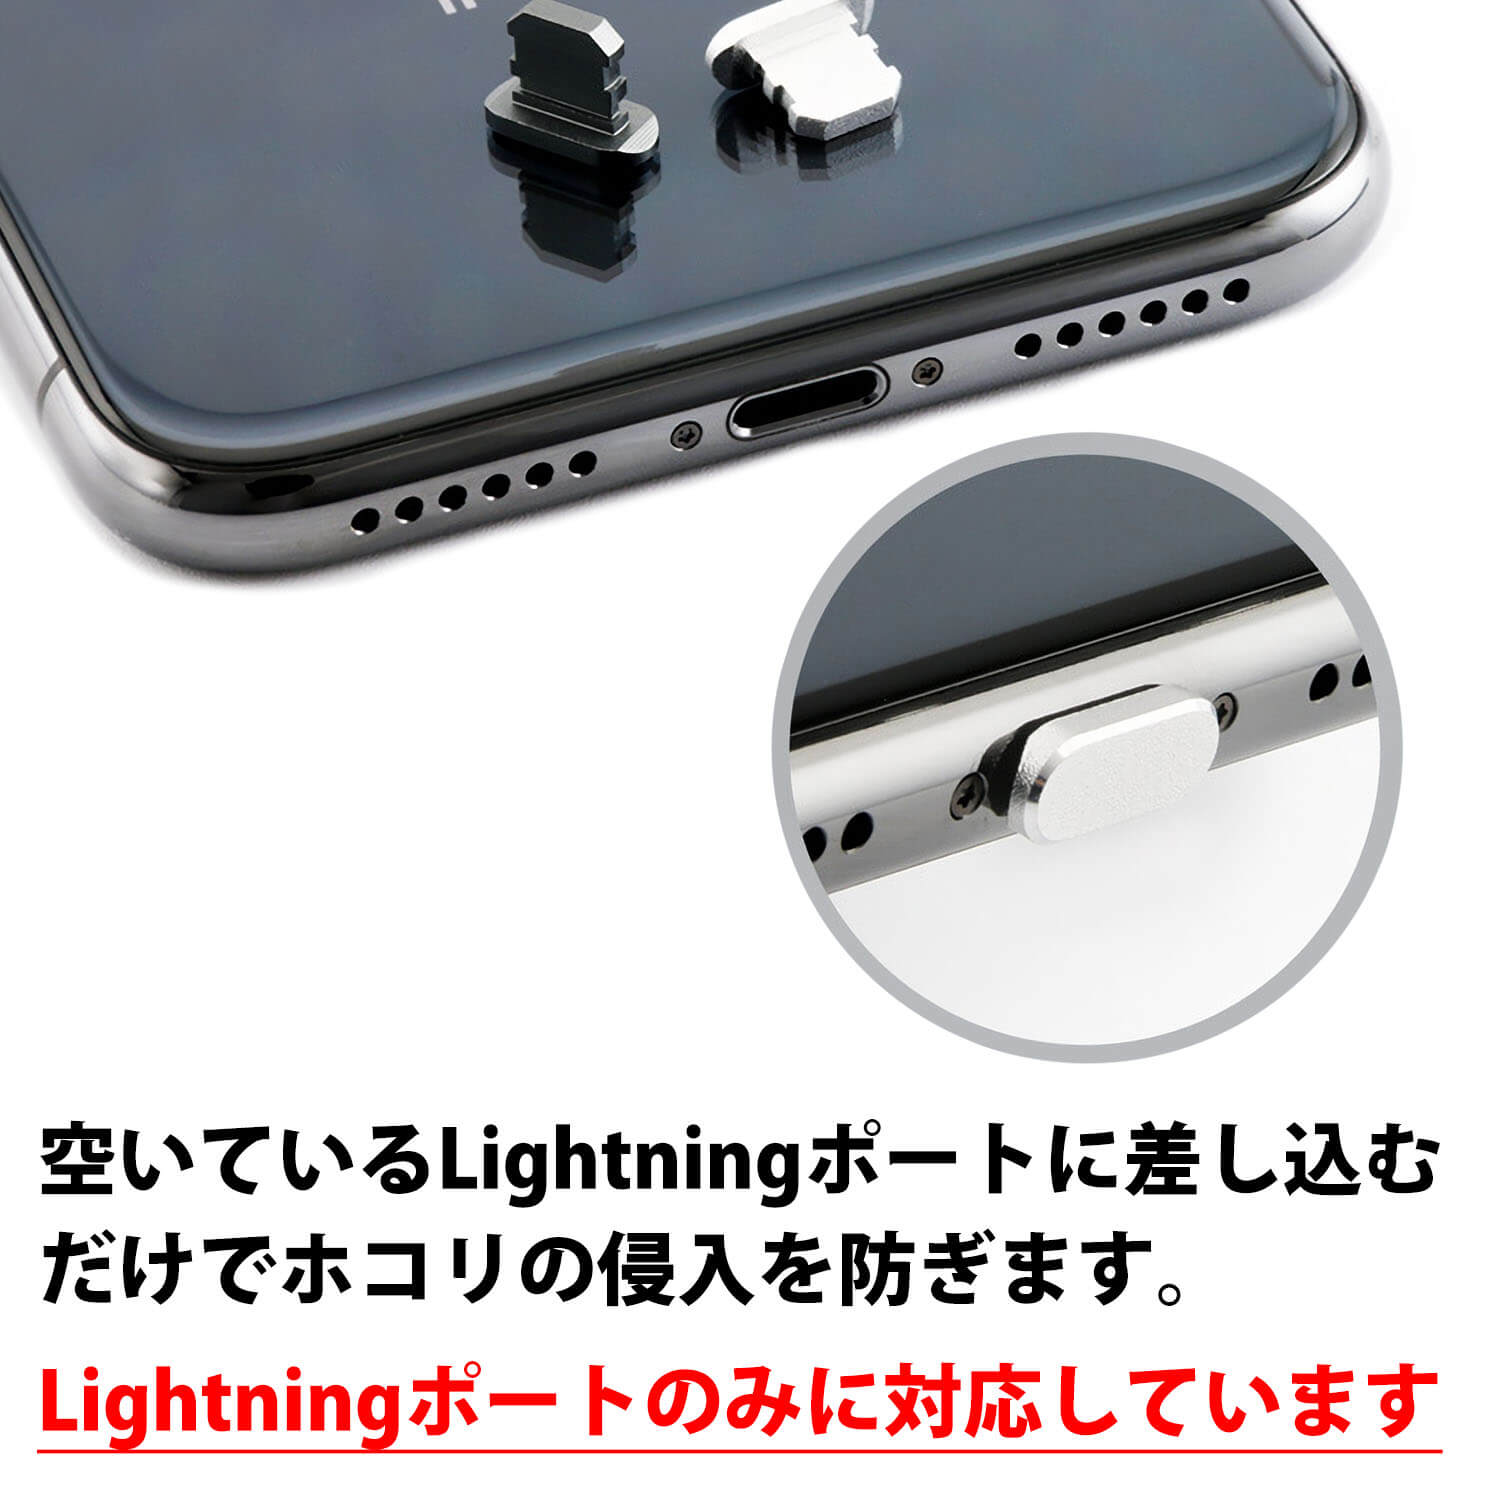 最大30%offクーポン★iPhone アルミカバー 2個セット 差込口 カバー iPhone 端子 カバー 差し込み ライトニング キャップ Lightning コネクタ iPad アイパッド エアポッズ Airpods アルミニウム アルミ製 Lightningポート アルミカバー アイフォン